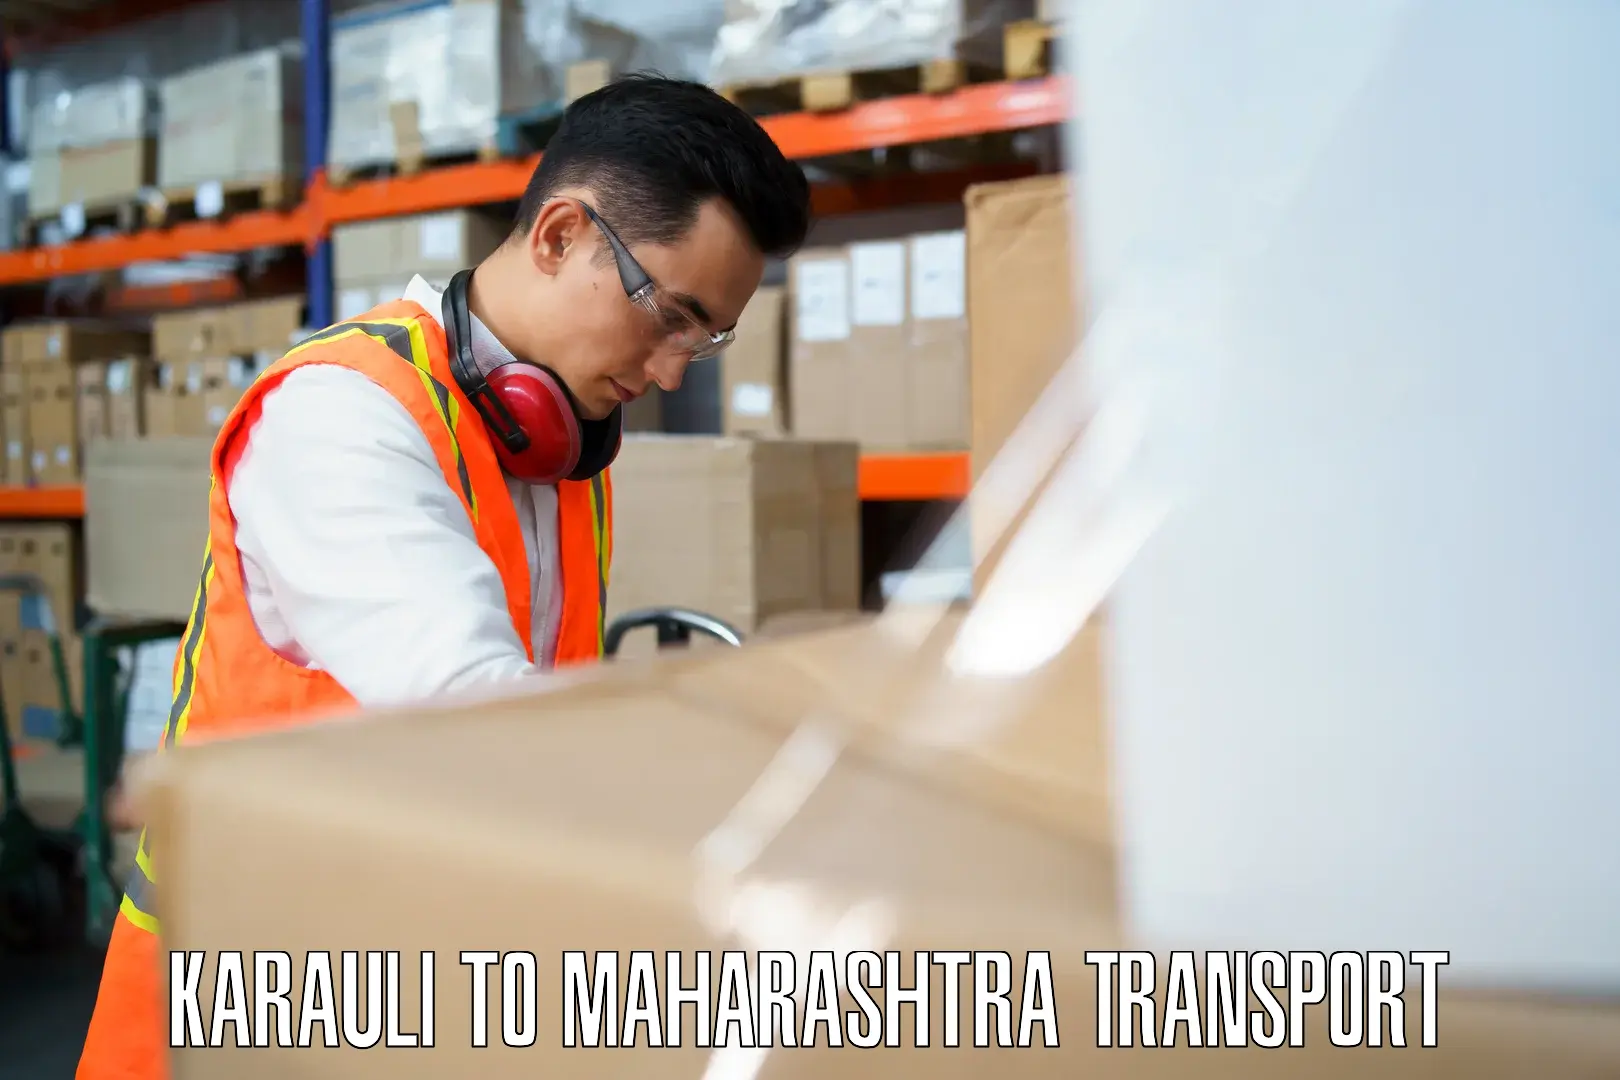 Daily transport service Karauli to Maharashtra